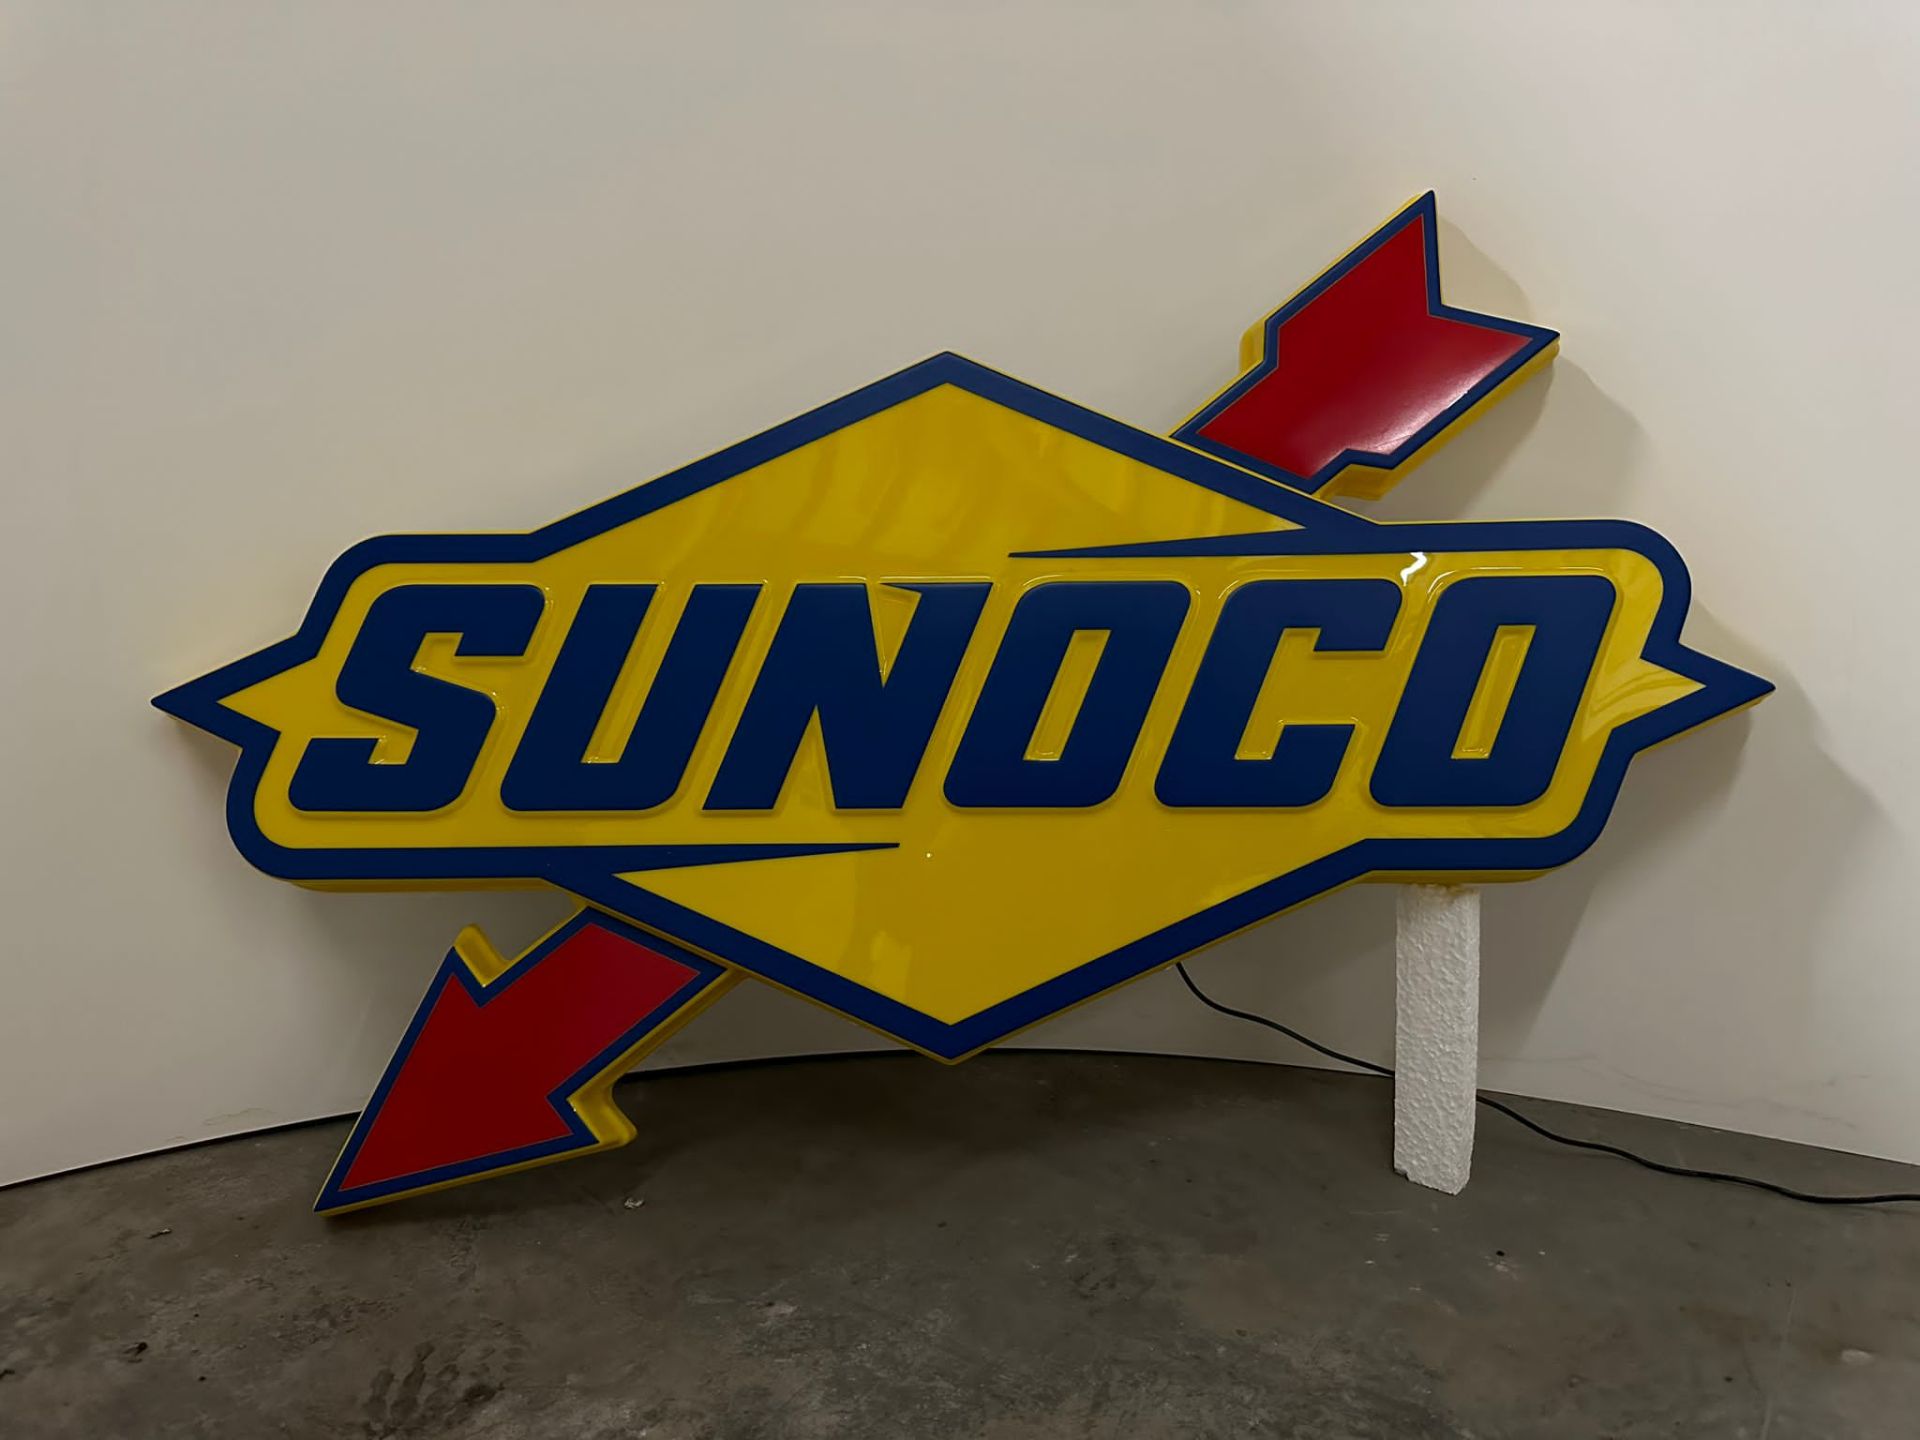 Sunoco illuminated sign - Image 5 of 6